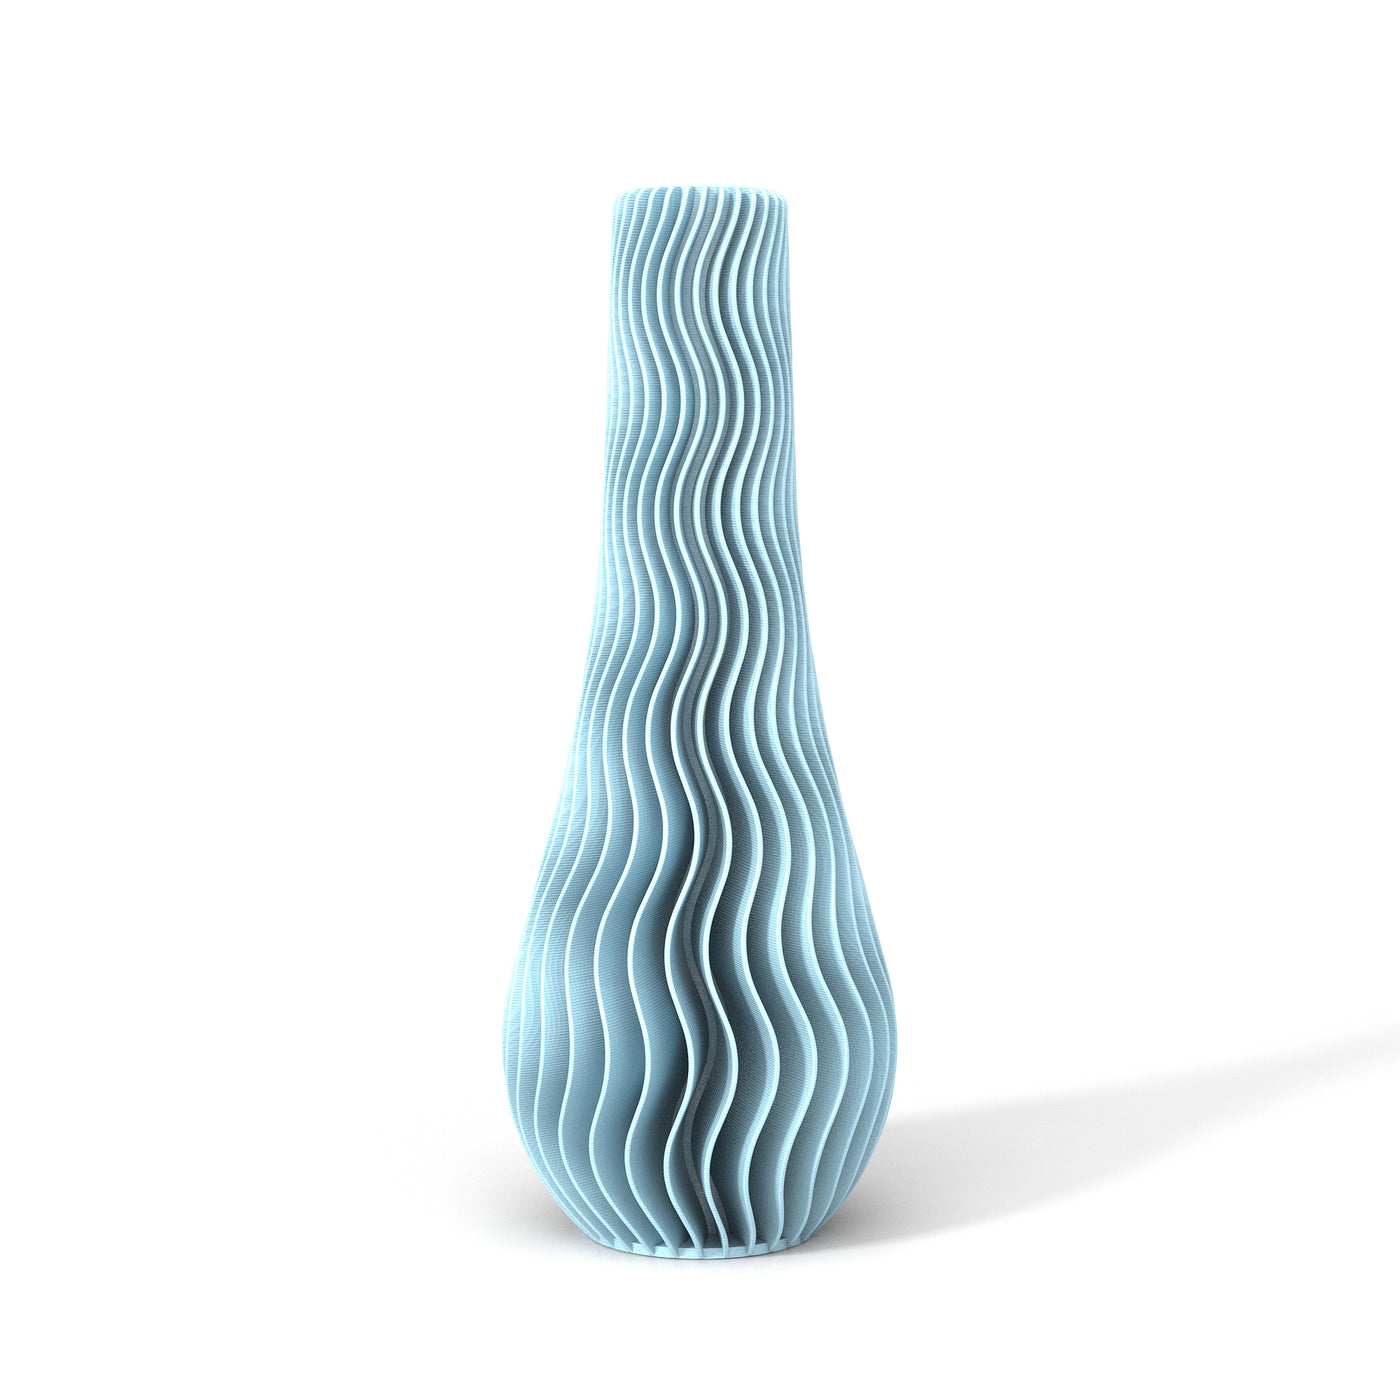 Světle modrá designová váza 3D print WAVE 2 zepředu